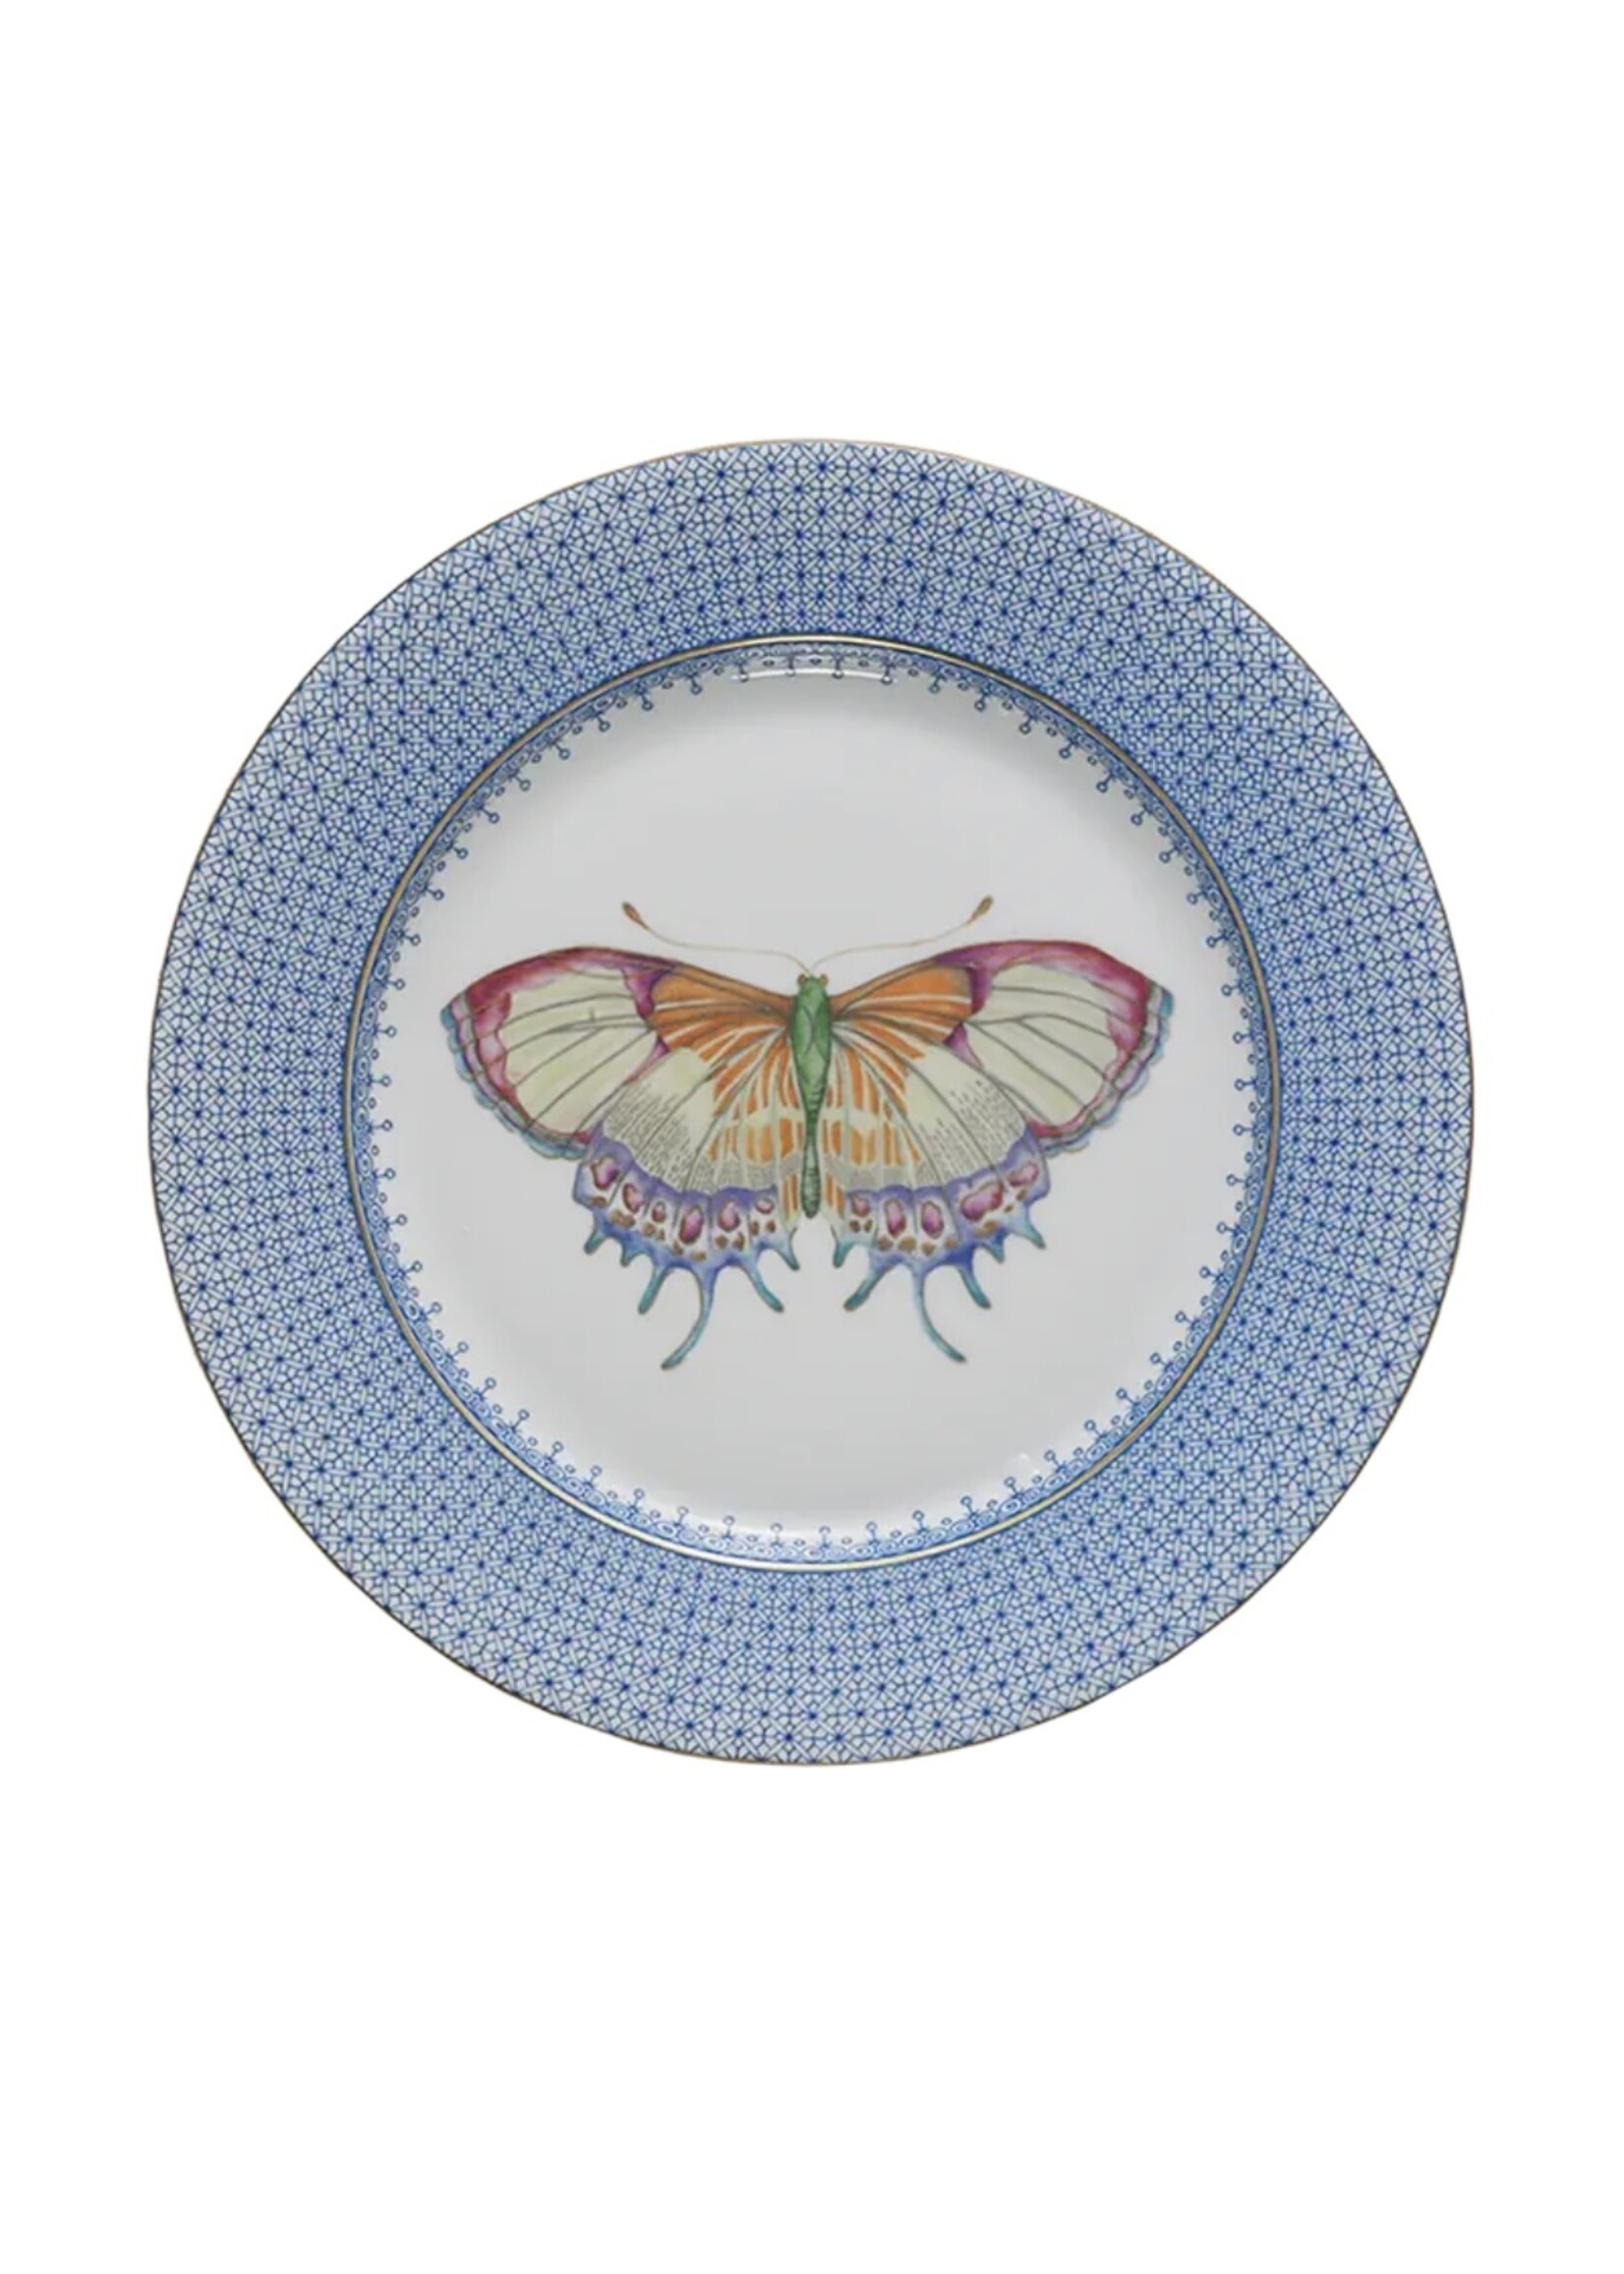 Mottahedeh Mottahedeh Cornflower Lace Dessert Plate w/Butterfly